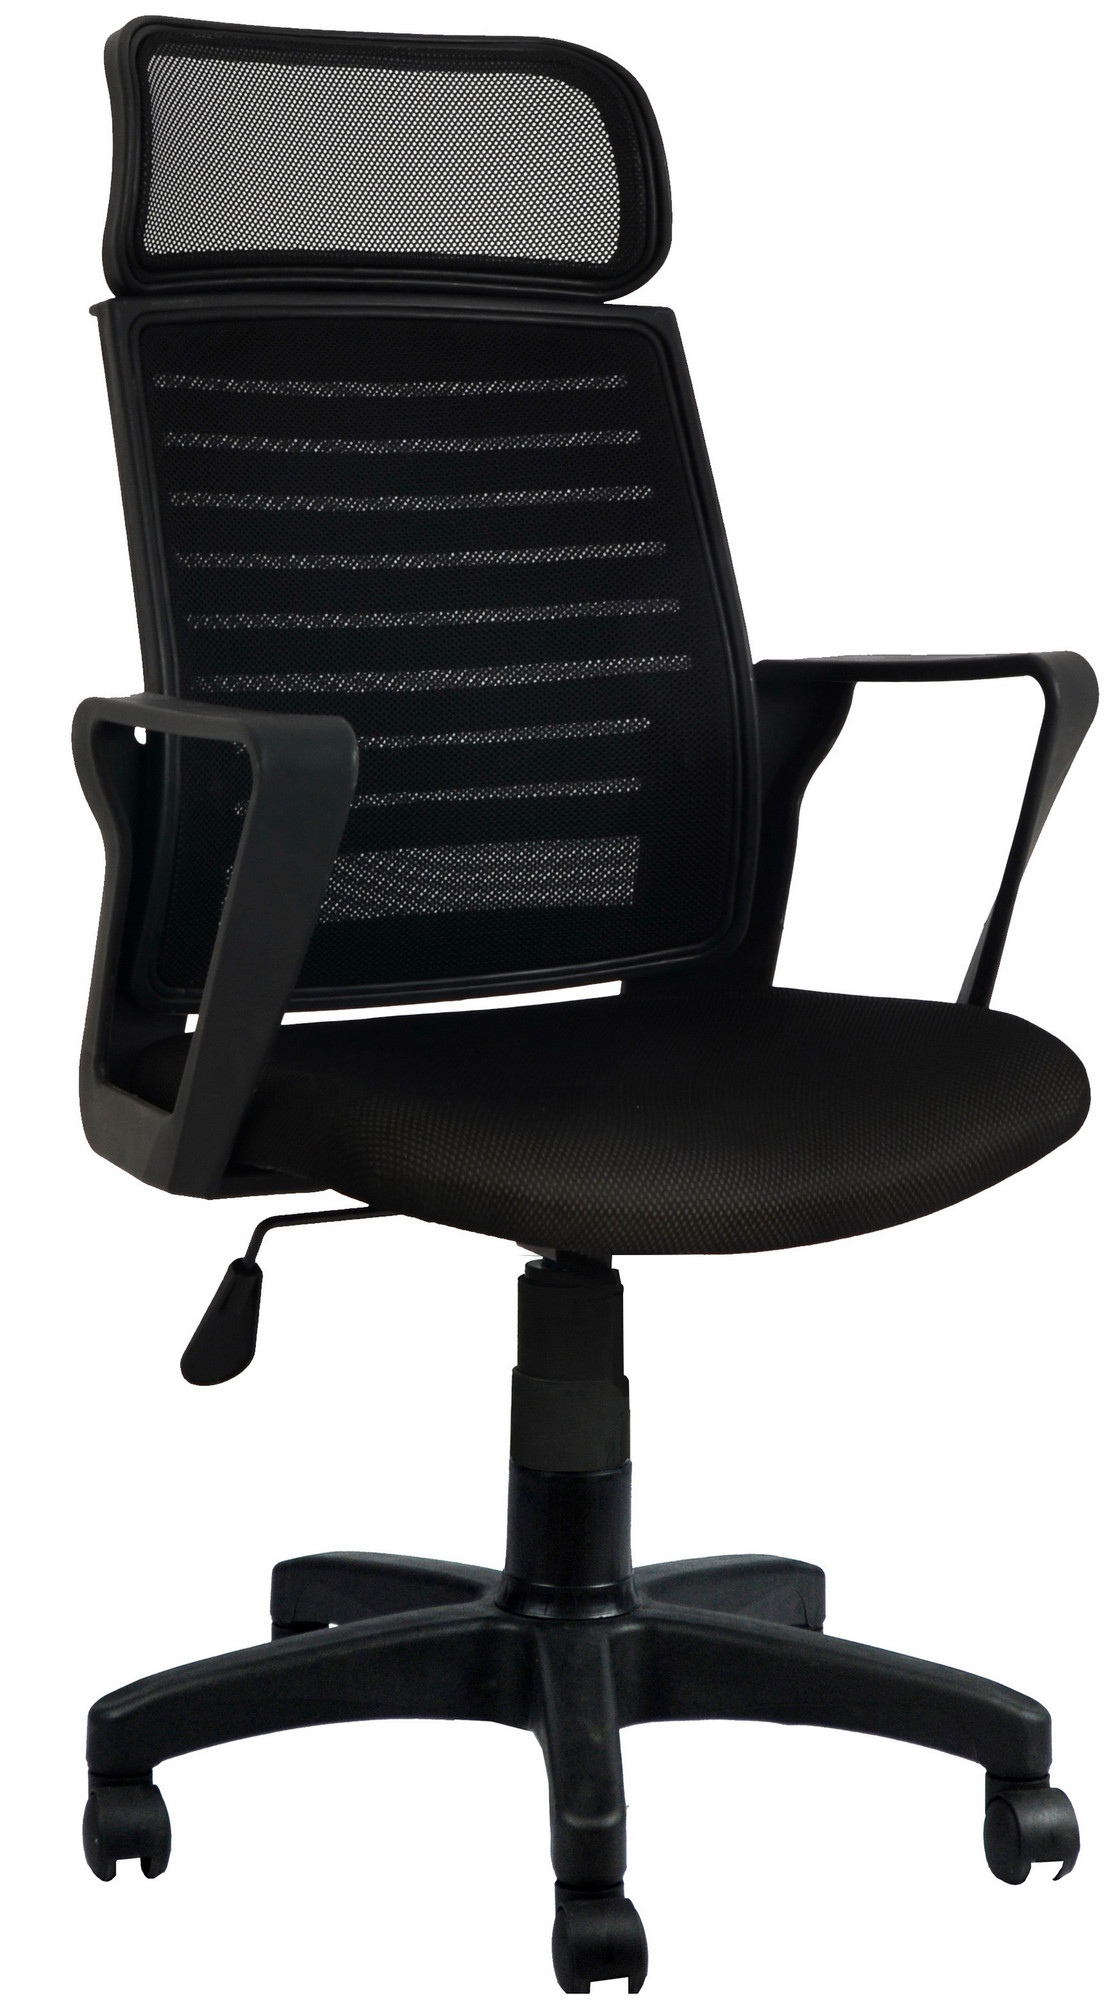 ASIR Kancelářská židle BORICCI černá